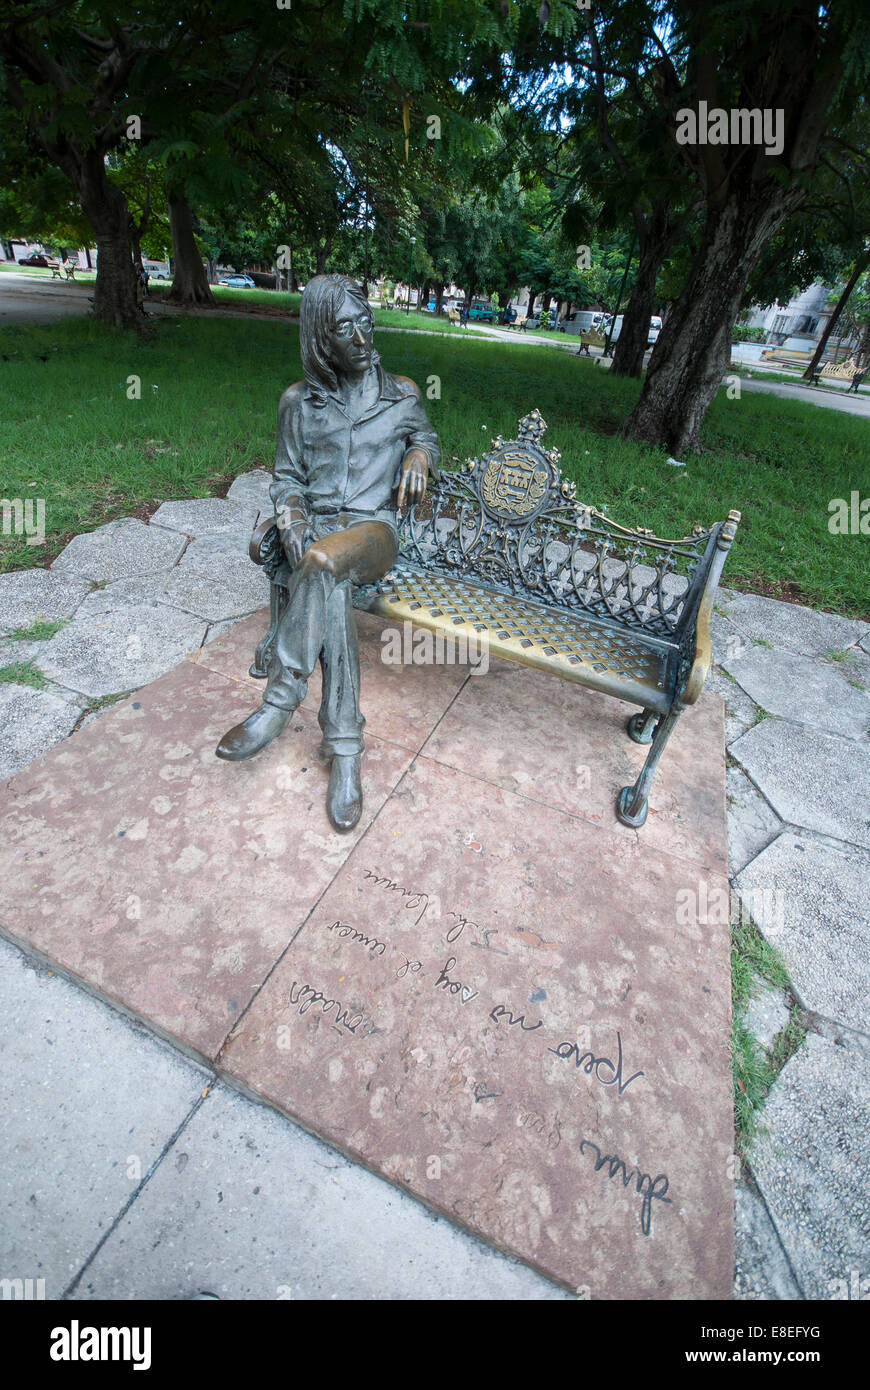 Una statua di bronzo di Beatle John Lennon seduto su una panchina di John Lennon park (precedentemente conosciuto come Parque Menocal) in Havana Cuba Foto Stock